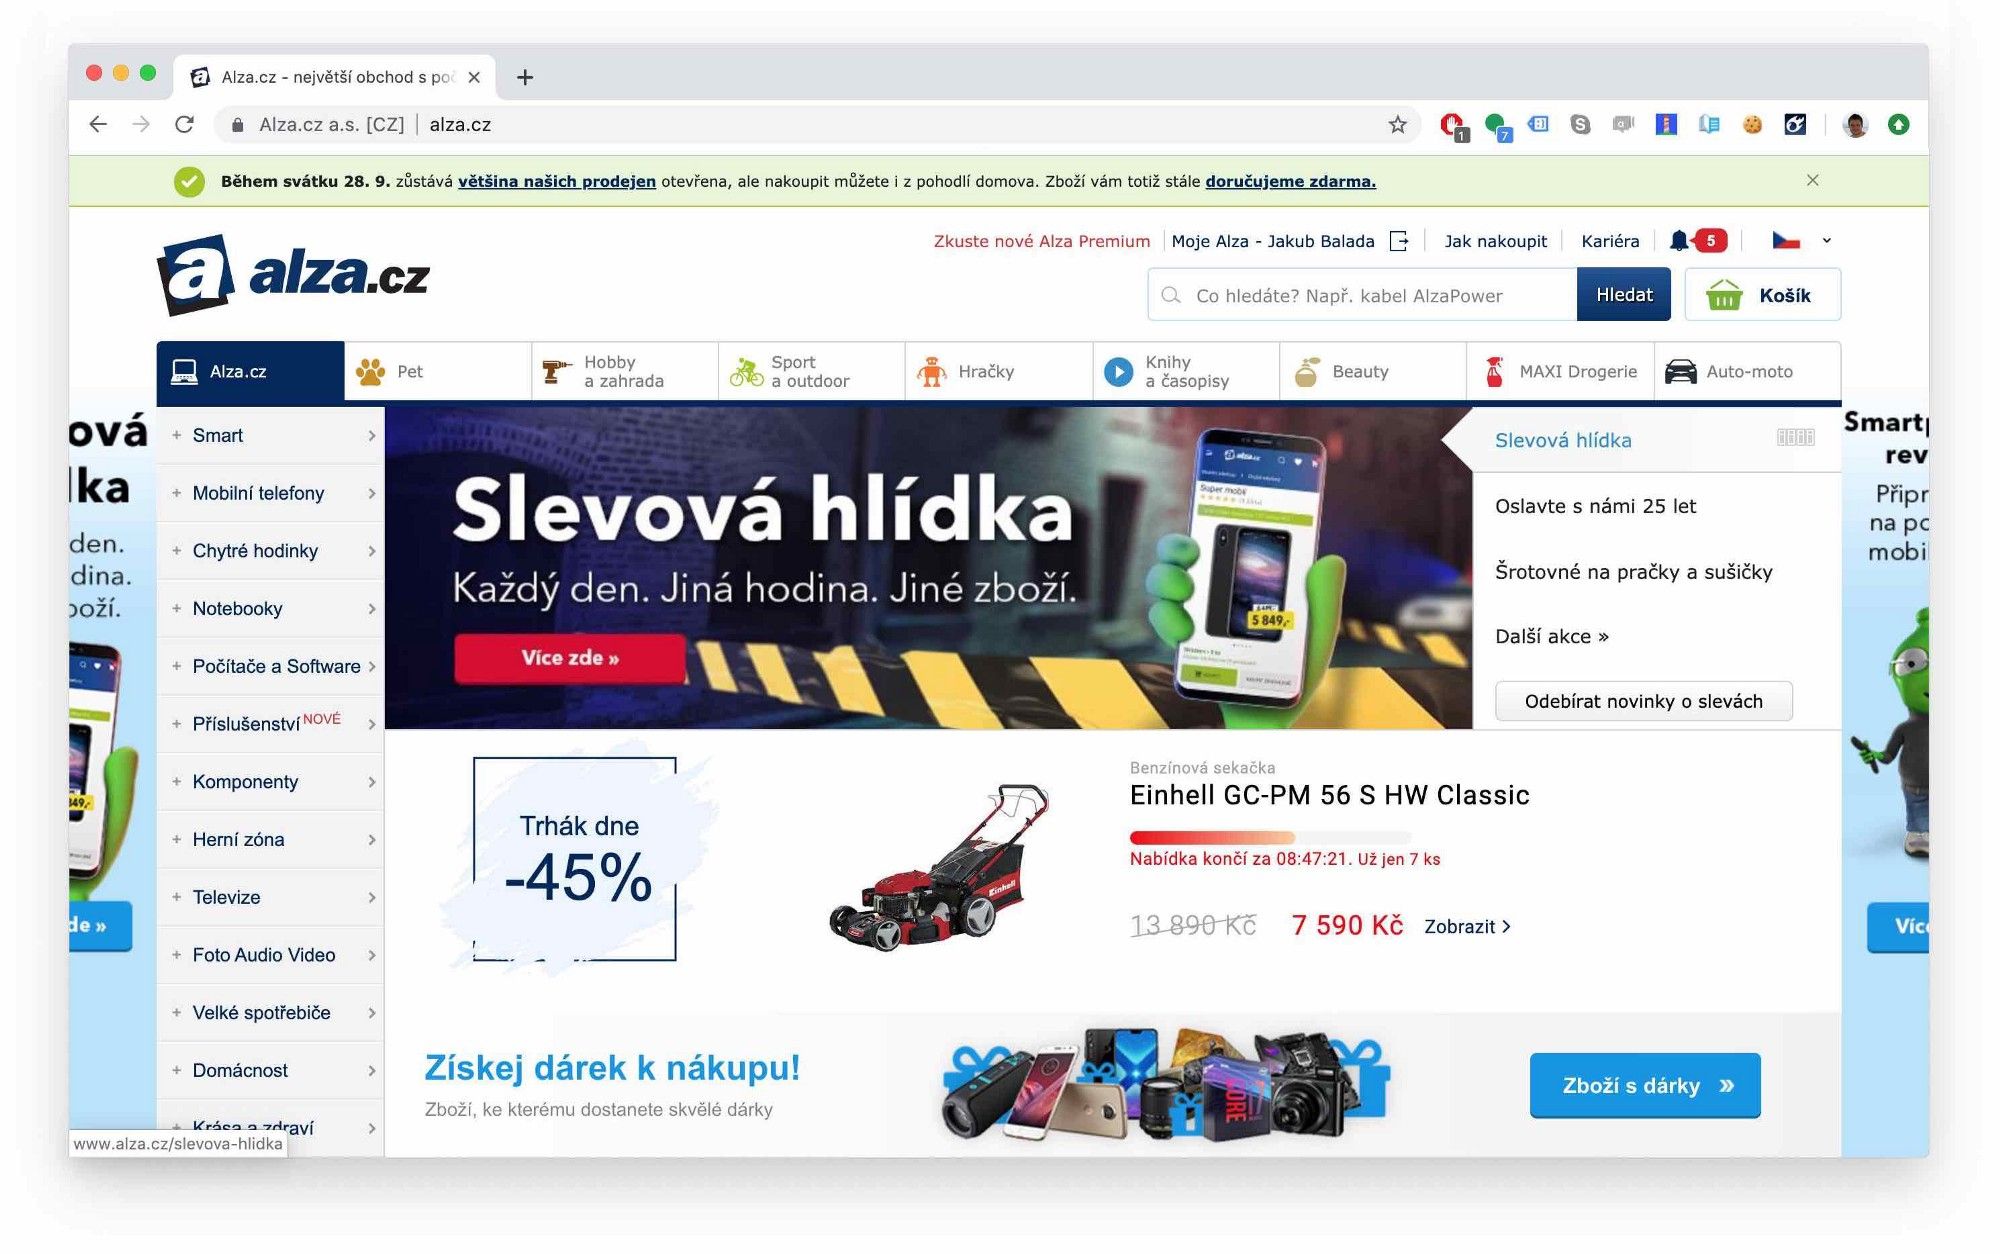 snímek obrazovky bubnové sekačky ve výprodeji na webu alza.cz propagované jako "Trhák dne" z 13890 Kč na 7590 Kč